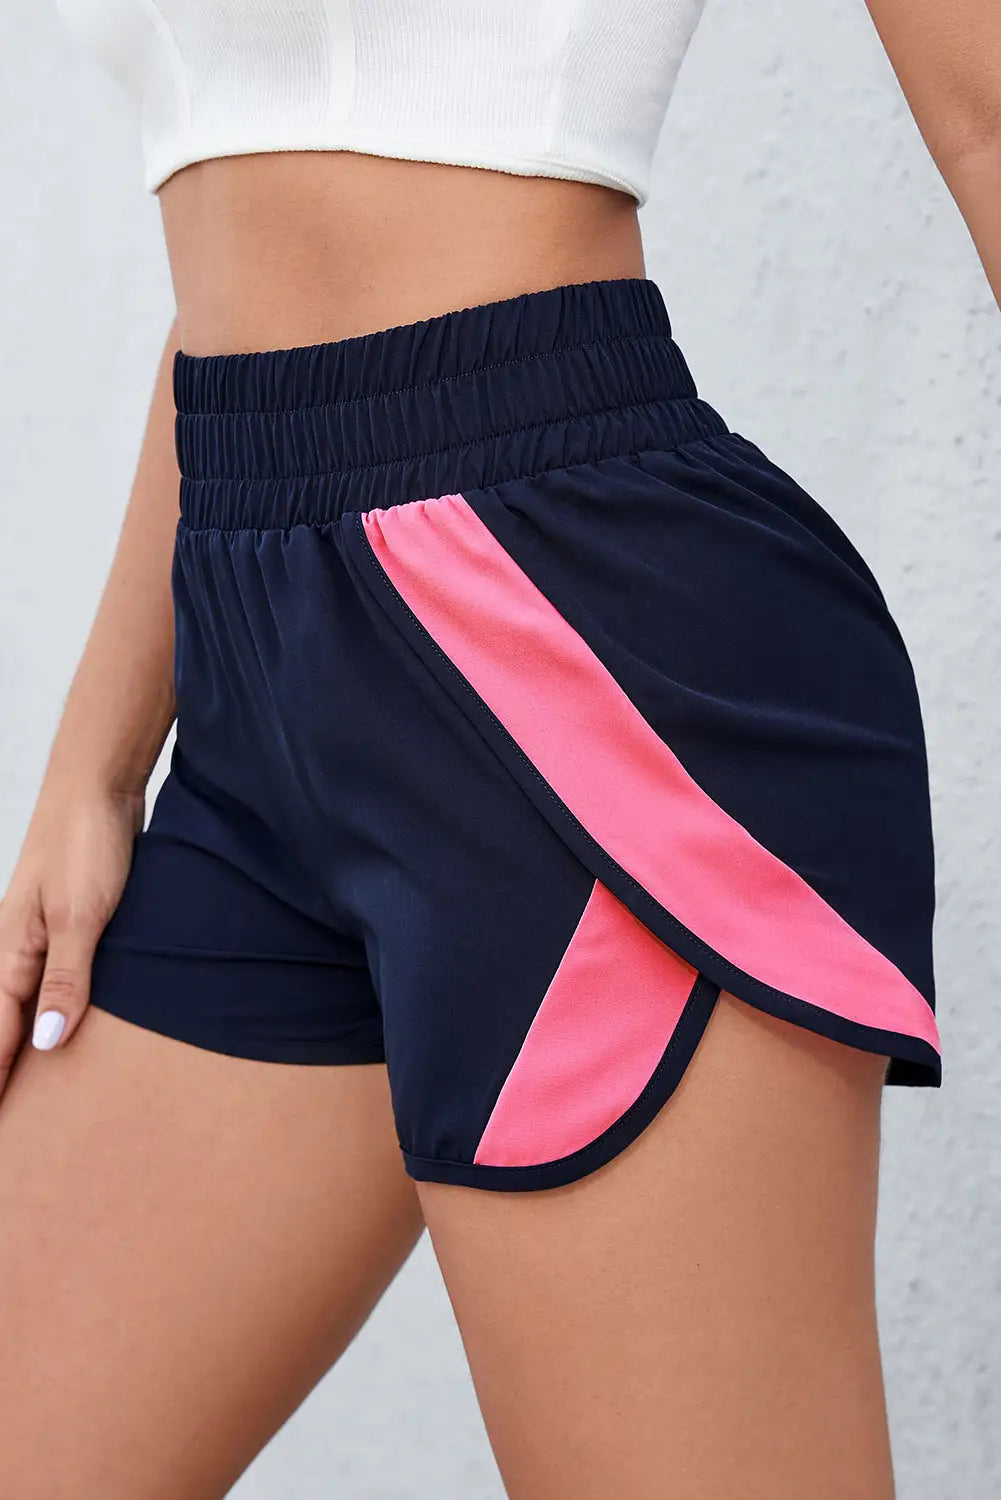 Pink smocked elastic waist athletic shorts